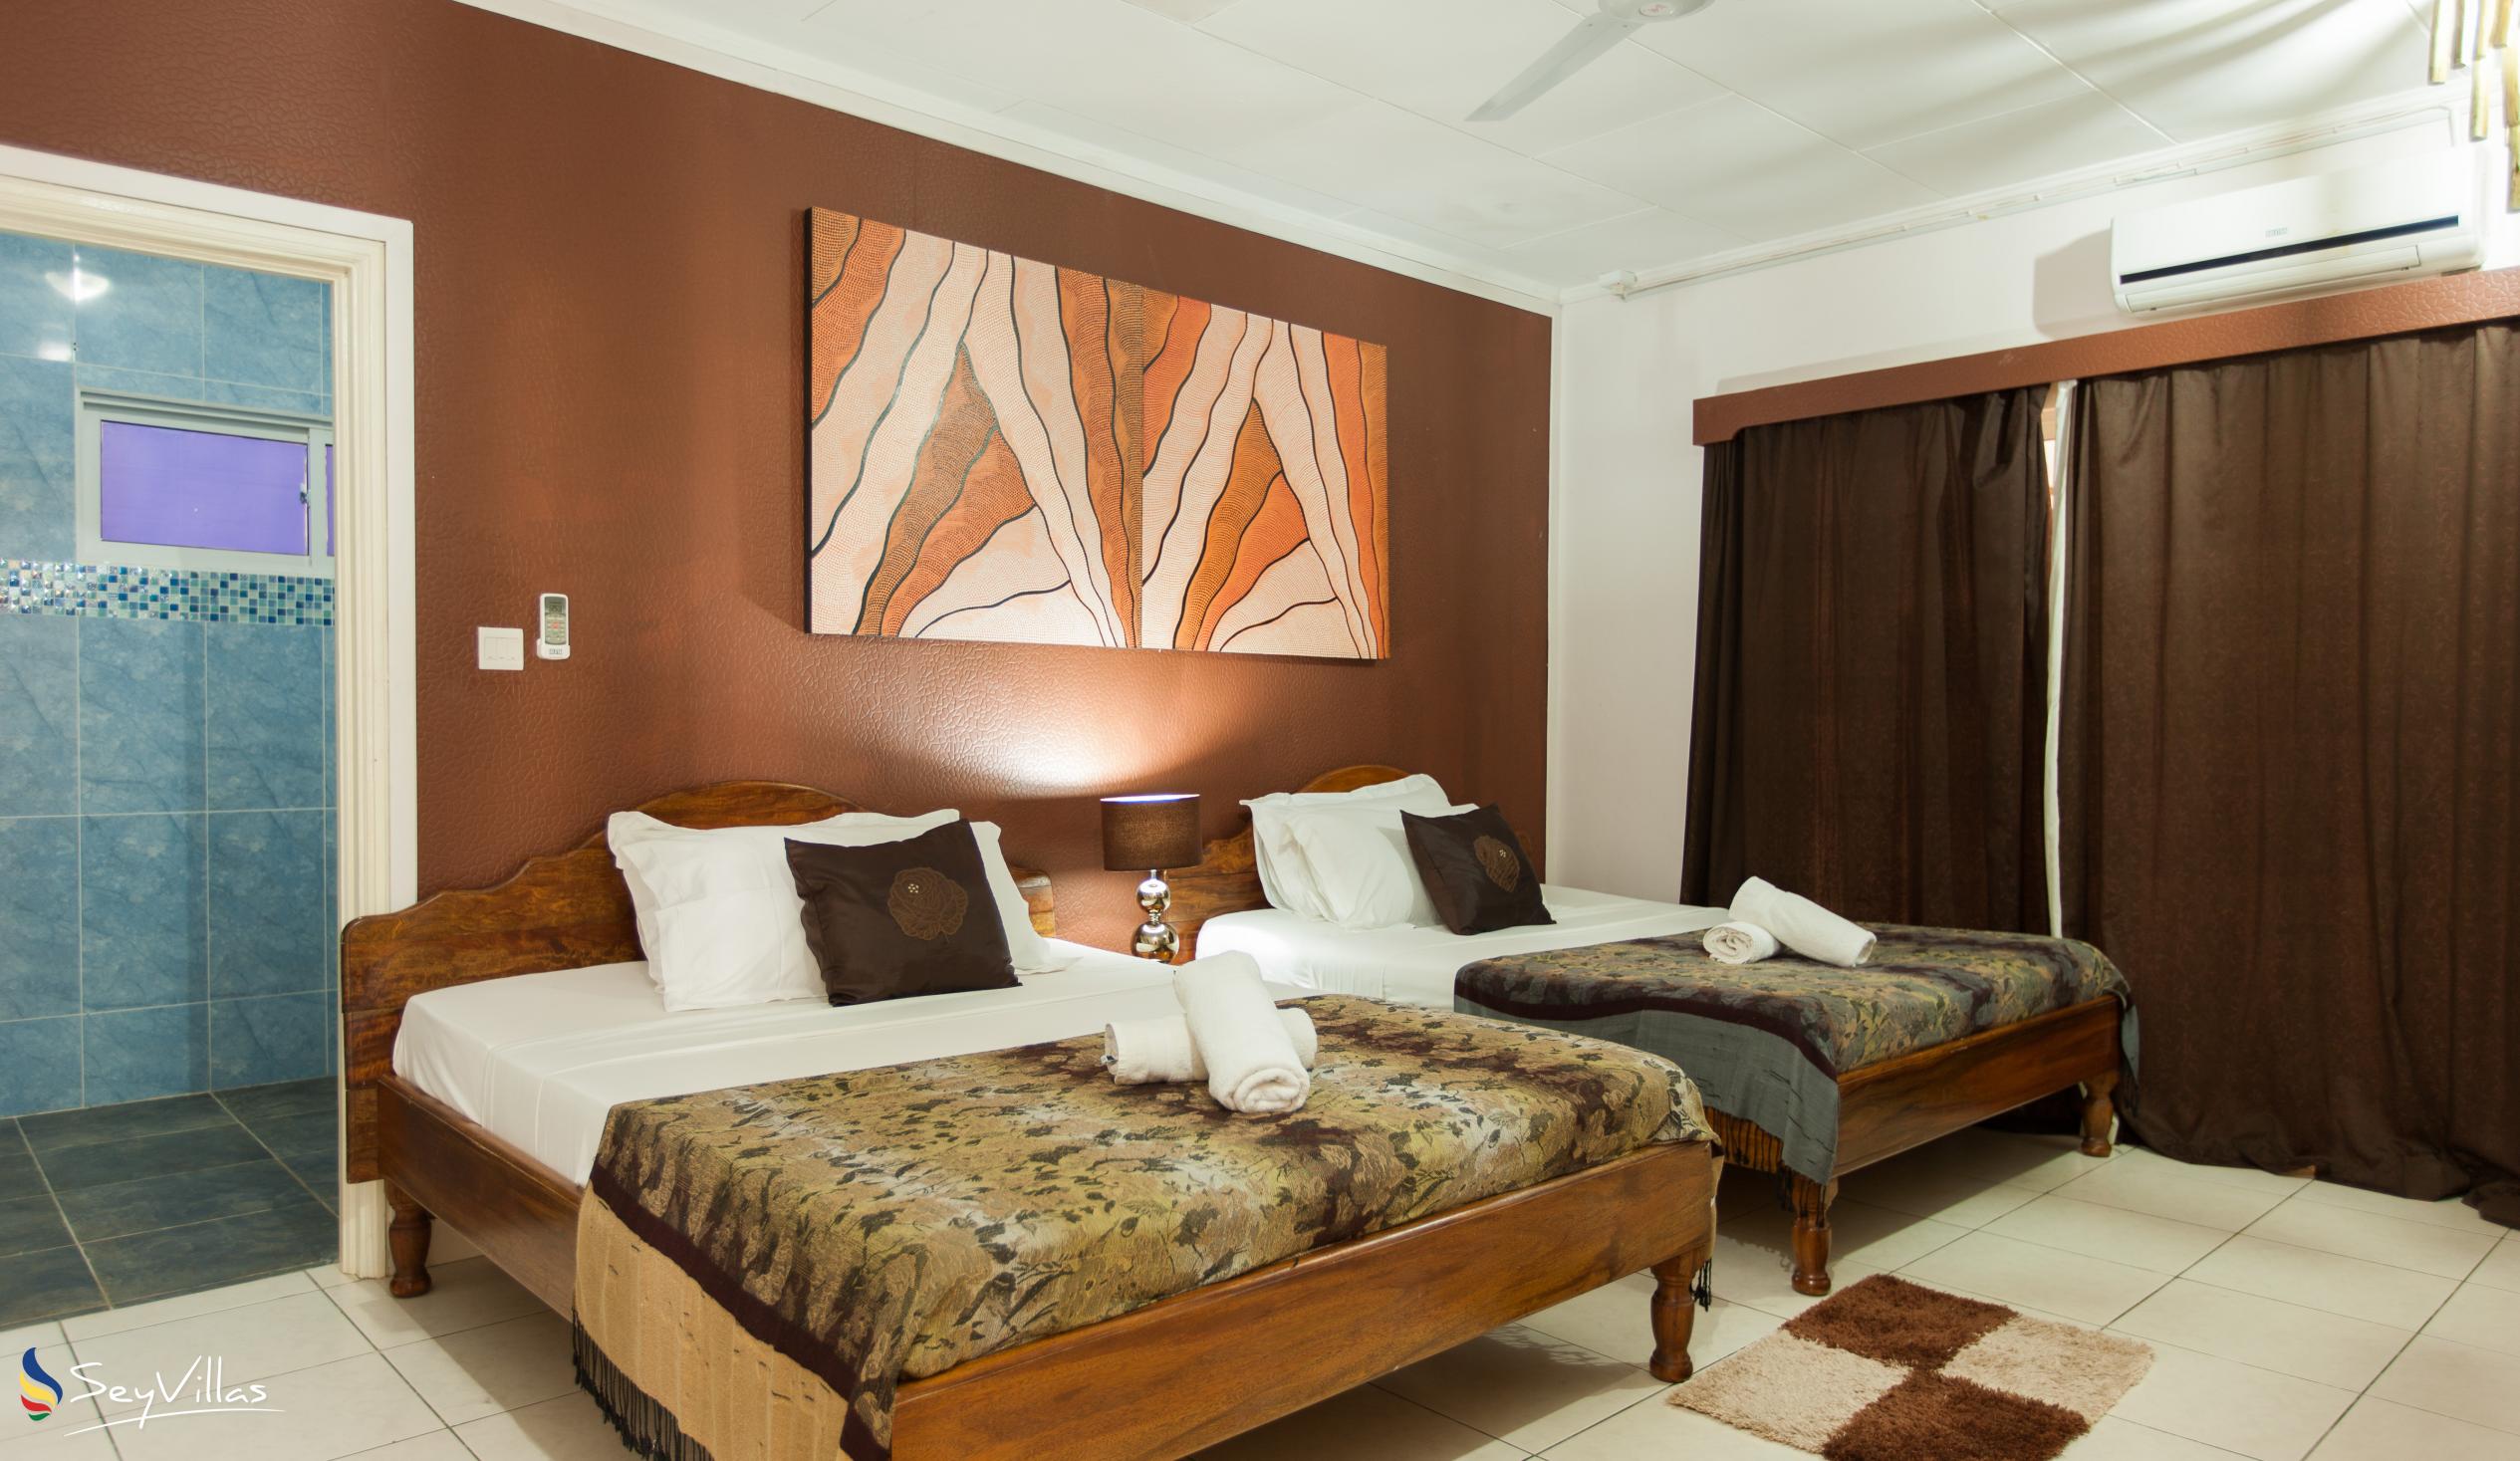 Photo 14: Villa Authentique - Quadruple Room - La Digue (Seychelles)